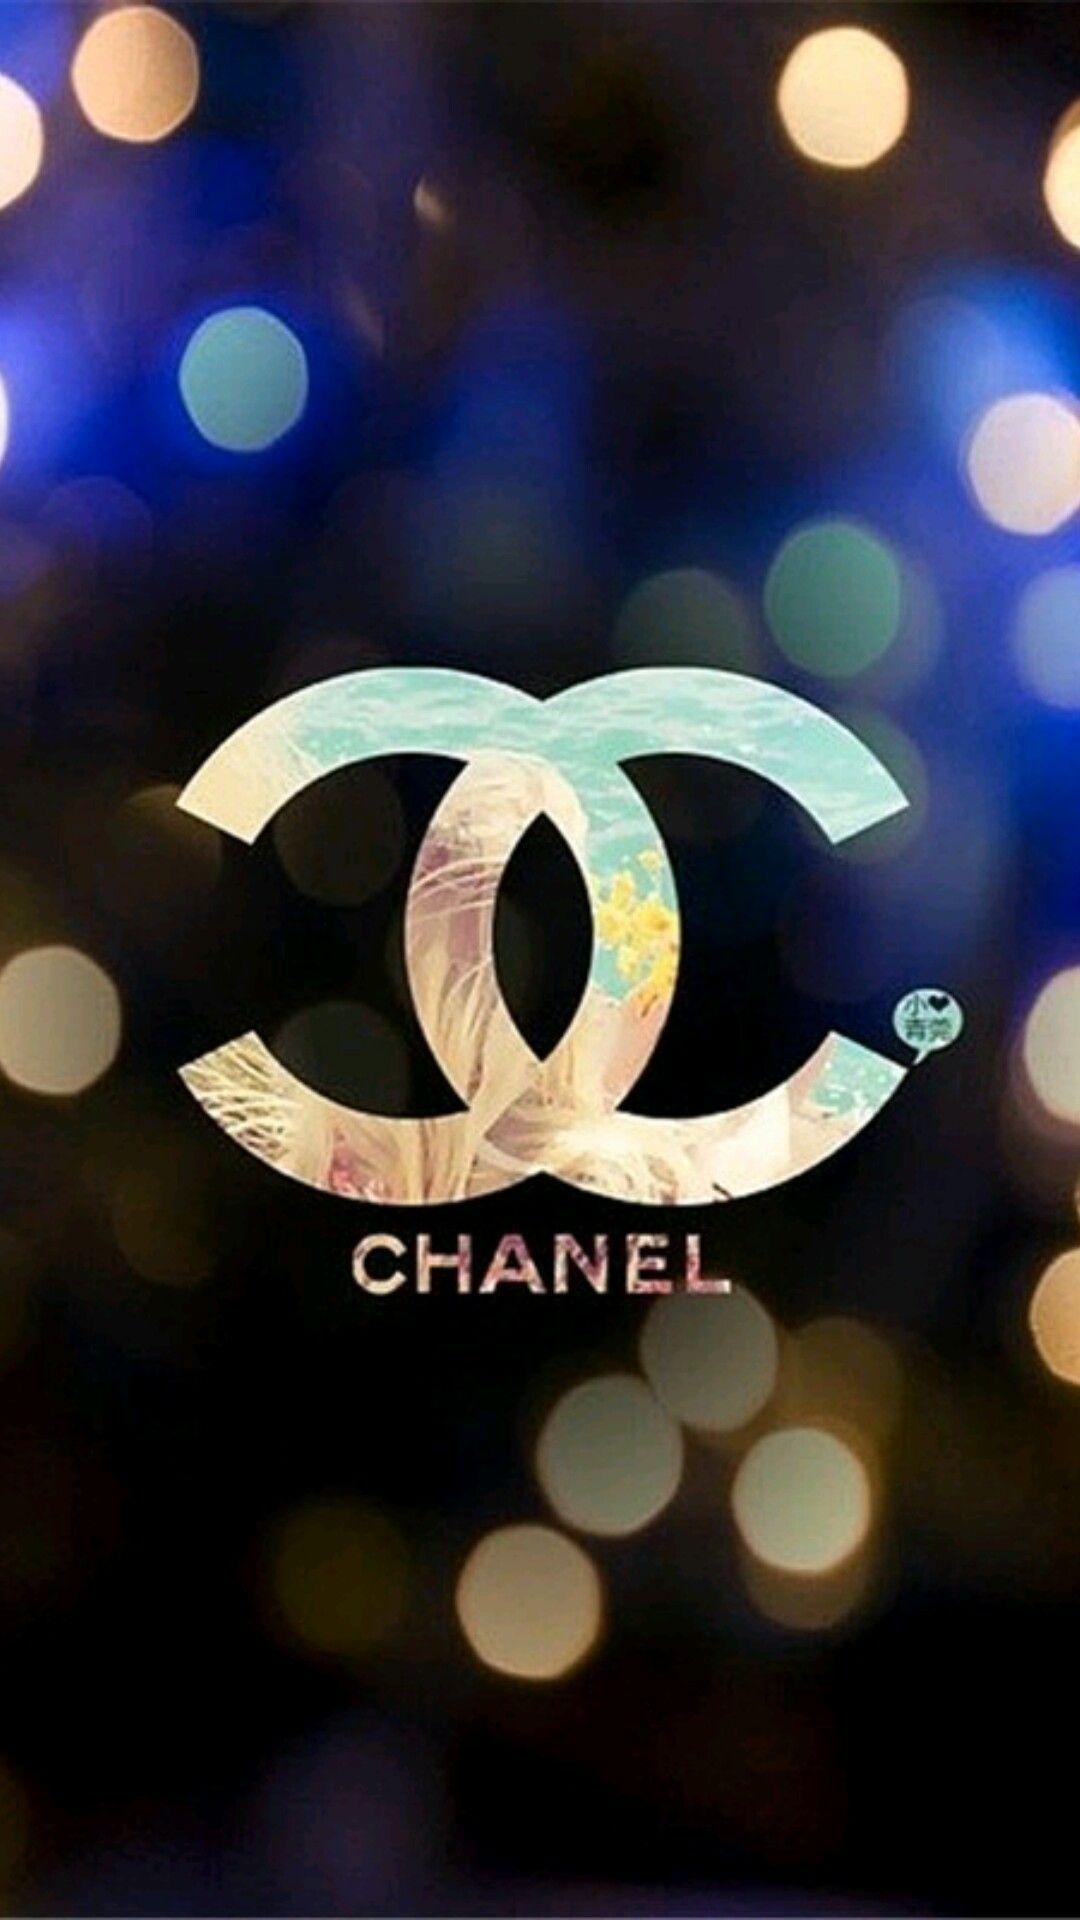 Chanel Galaxy Logo - Chanel | Chanel | Pinterest